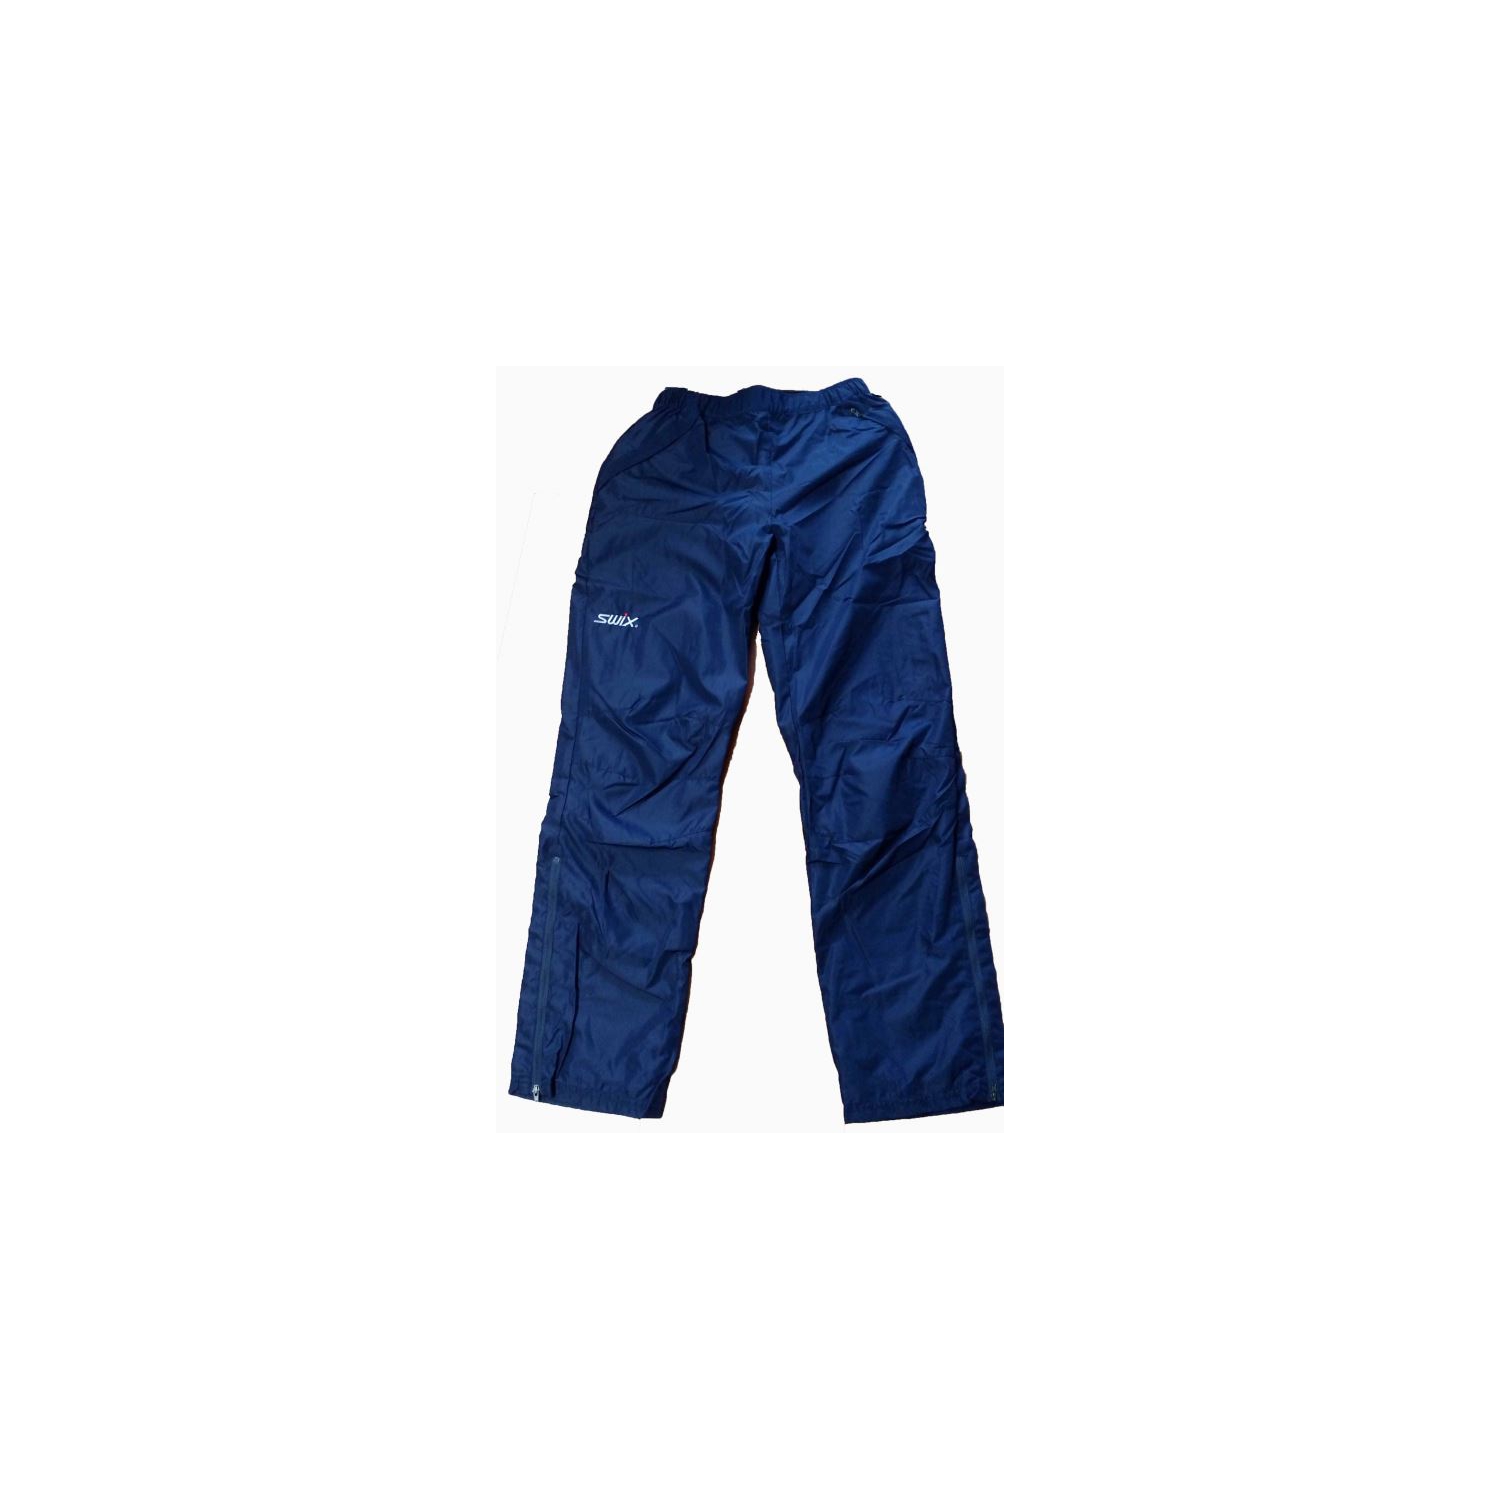 SWIX Classic wind pants women blue